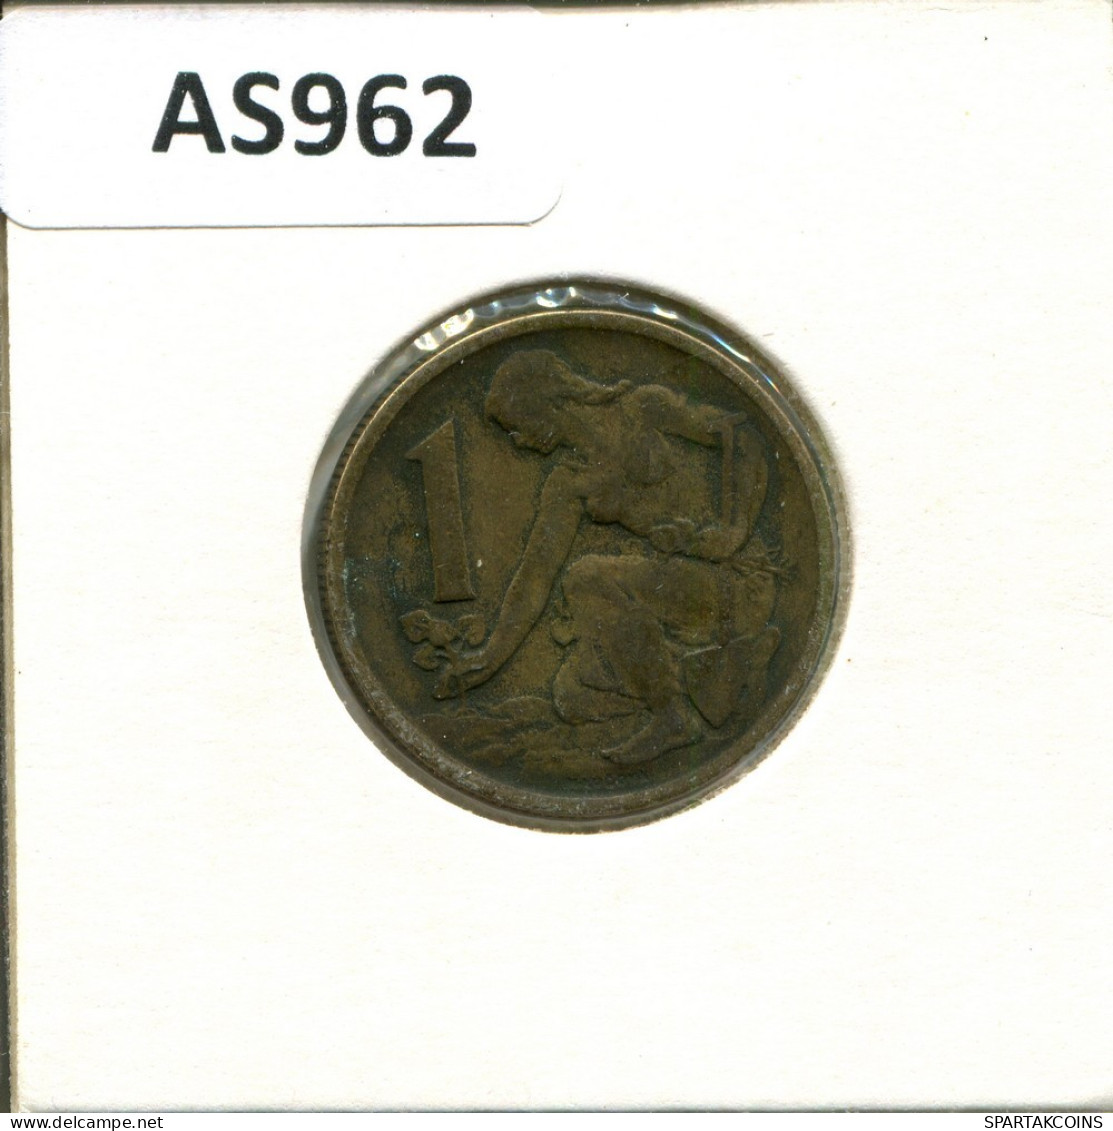 1 KORUNA 1963 CZECHOSLOVAKIA Coin #AS962.U.A - Tchécoslovaquie